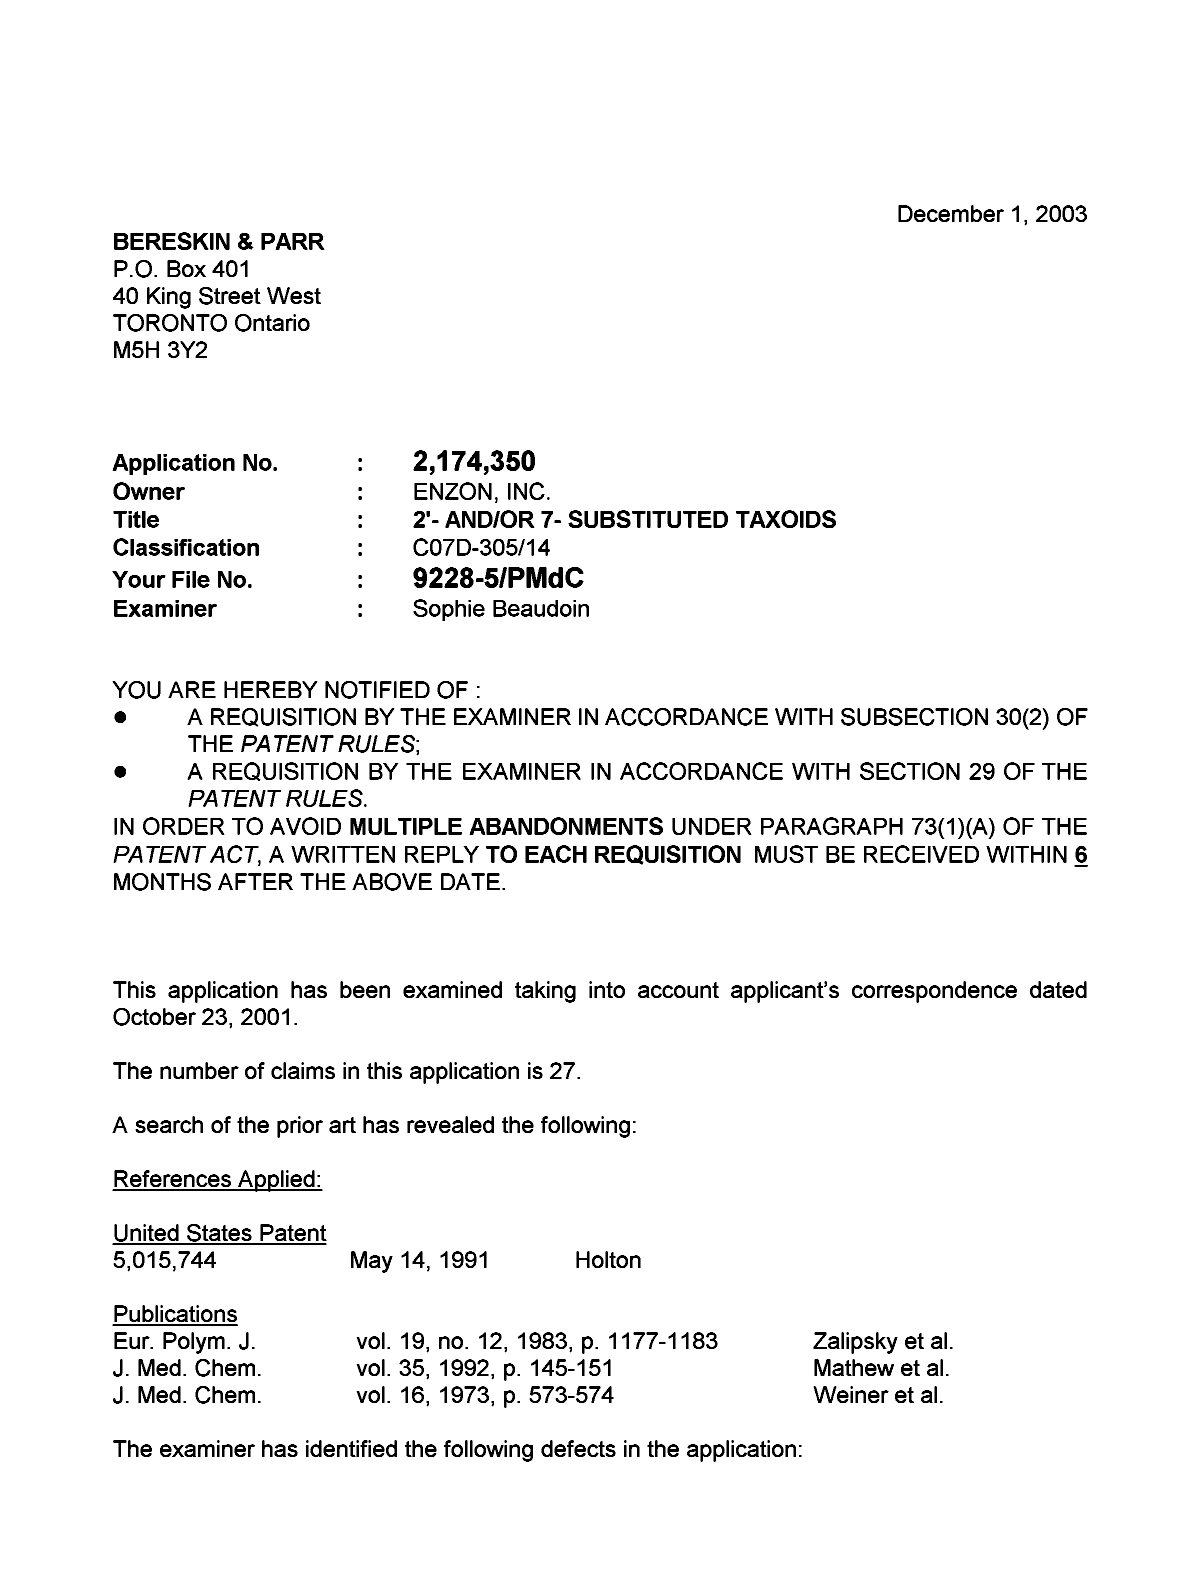 Document de brevet canadien 2174350. Poursuite-Amendment 20031201. Image 1 de 4